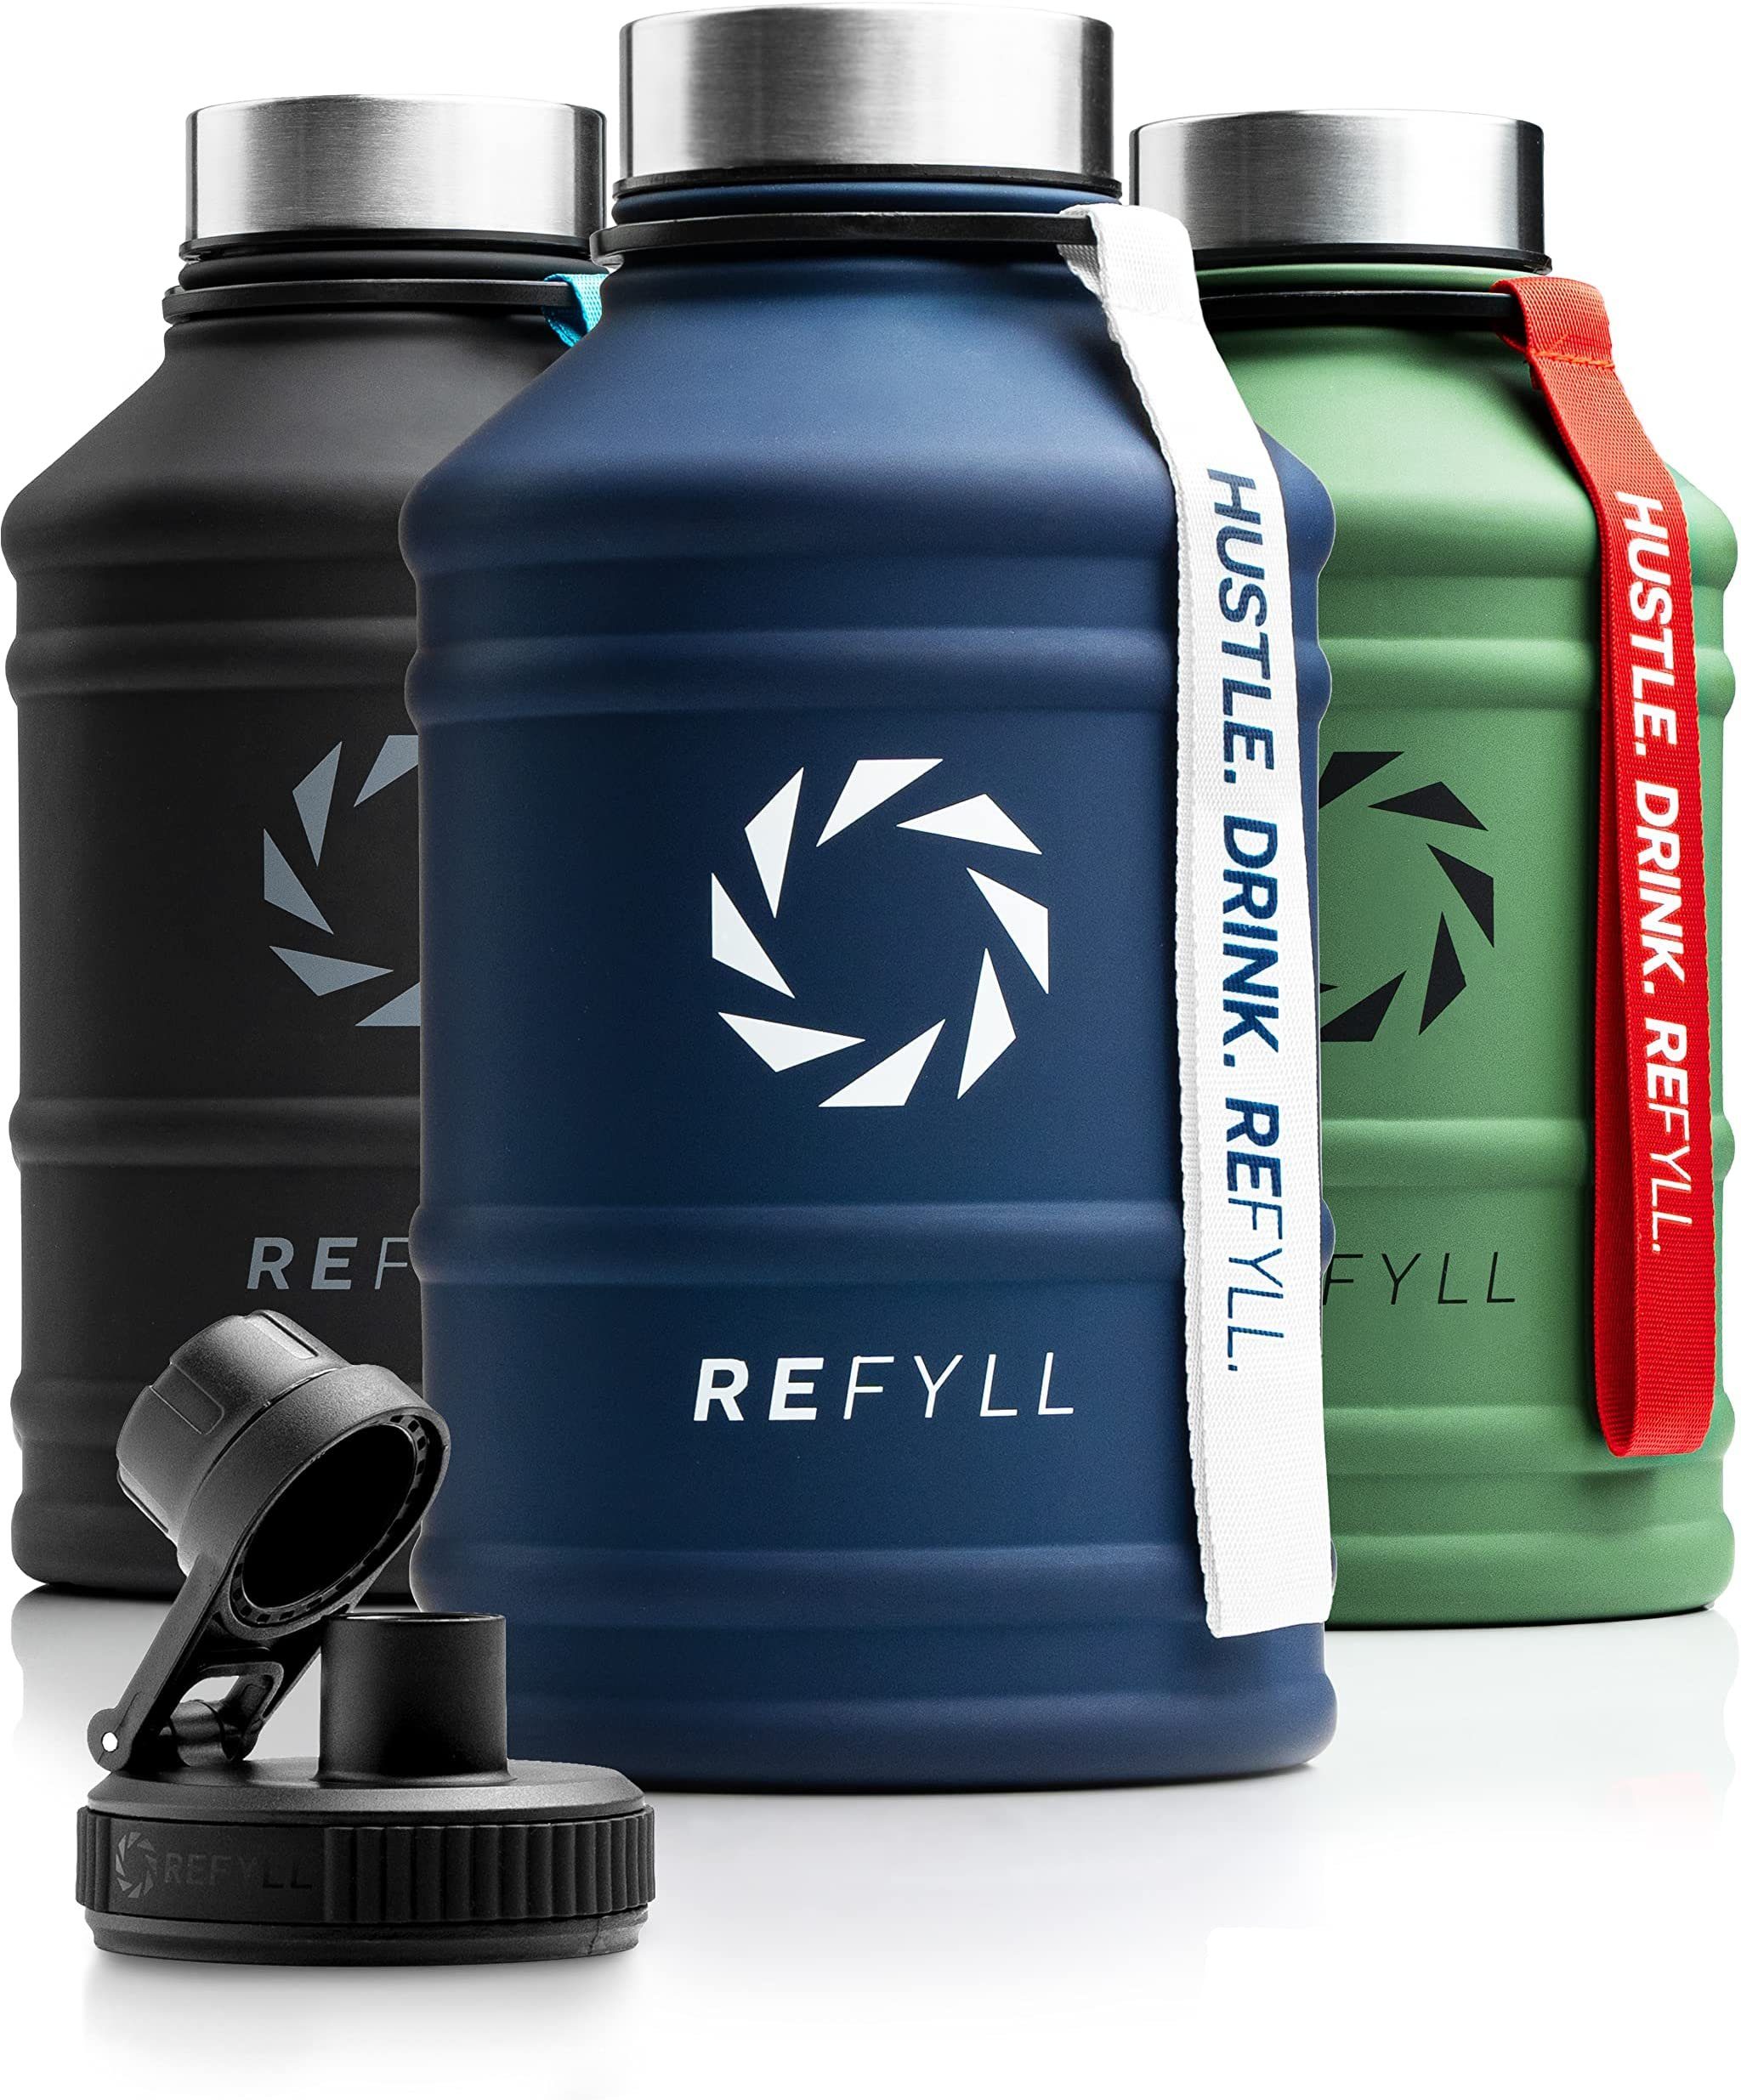 REFYLL Trinkflasche Edelstahl Trinkflasche Hero 1,3L und 2,2L, Auslaufsicher, robust, Fitness Trinkflasche für Sport, Gym, Water Jug auslaufsicher Navy Blue 2,2 L